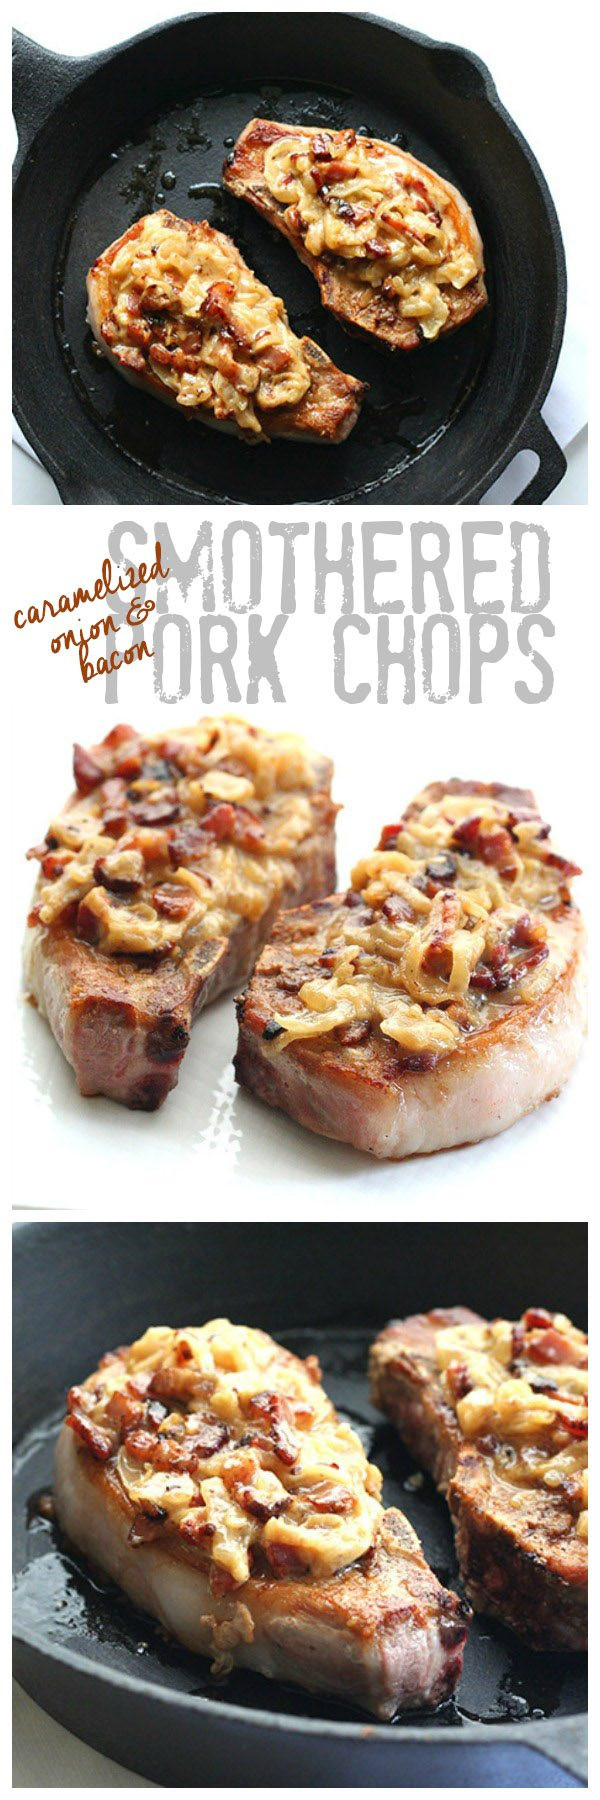 Low Carb Boneless Pork Chop Recipes
 Low Carb Primal Smothered Pork Chop Recipe